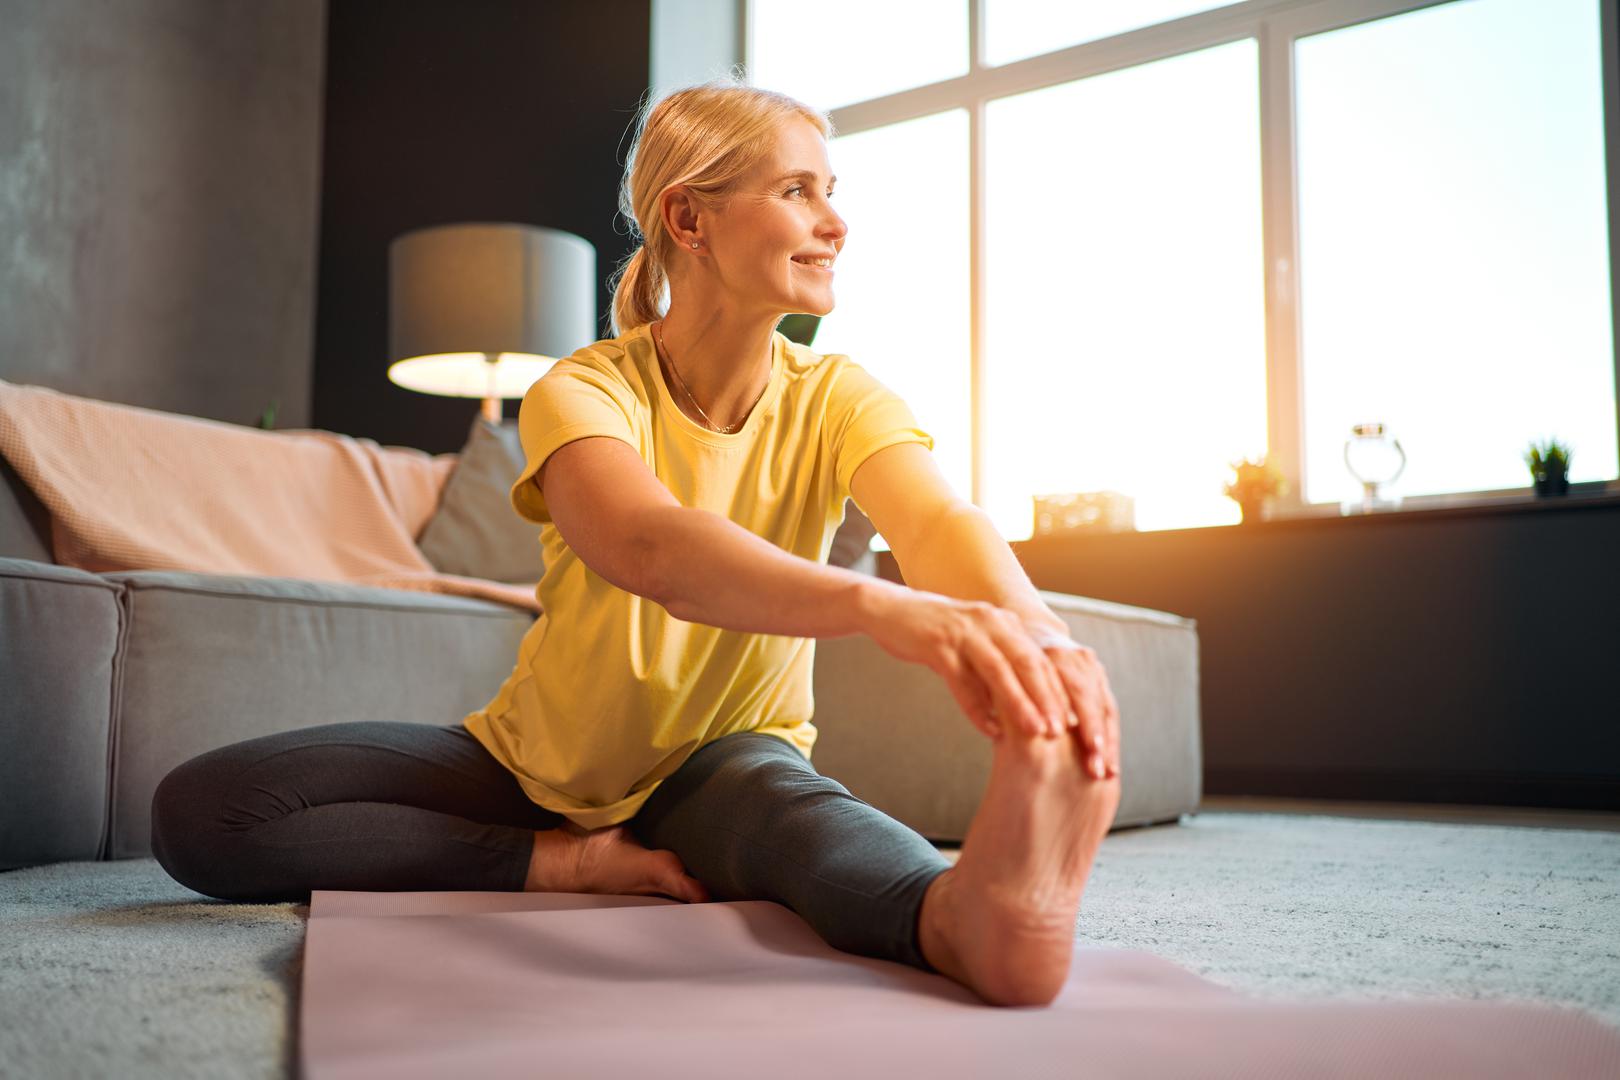 Zaključila je: ‘Kroz naše studije otkrili smo da joga može poboljšati integritet mitohondrija kao i integritet nuklearne DNK. Ako se integritet mitohondrija poboljša, on proizvodi više ATP-a, više energije i time možete usporiti funkcionalno propadanje tkiva. Ako jogom možemo poboljšati integritet mitohondrija, smanjiti oksidativni stres i upalu, povećati ukupni antioksidativni kapacitet, zapravo možemo odgoditi ili usporiti stopu staničnog starenja, čime se smanjuje naša biološka starost’.